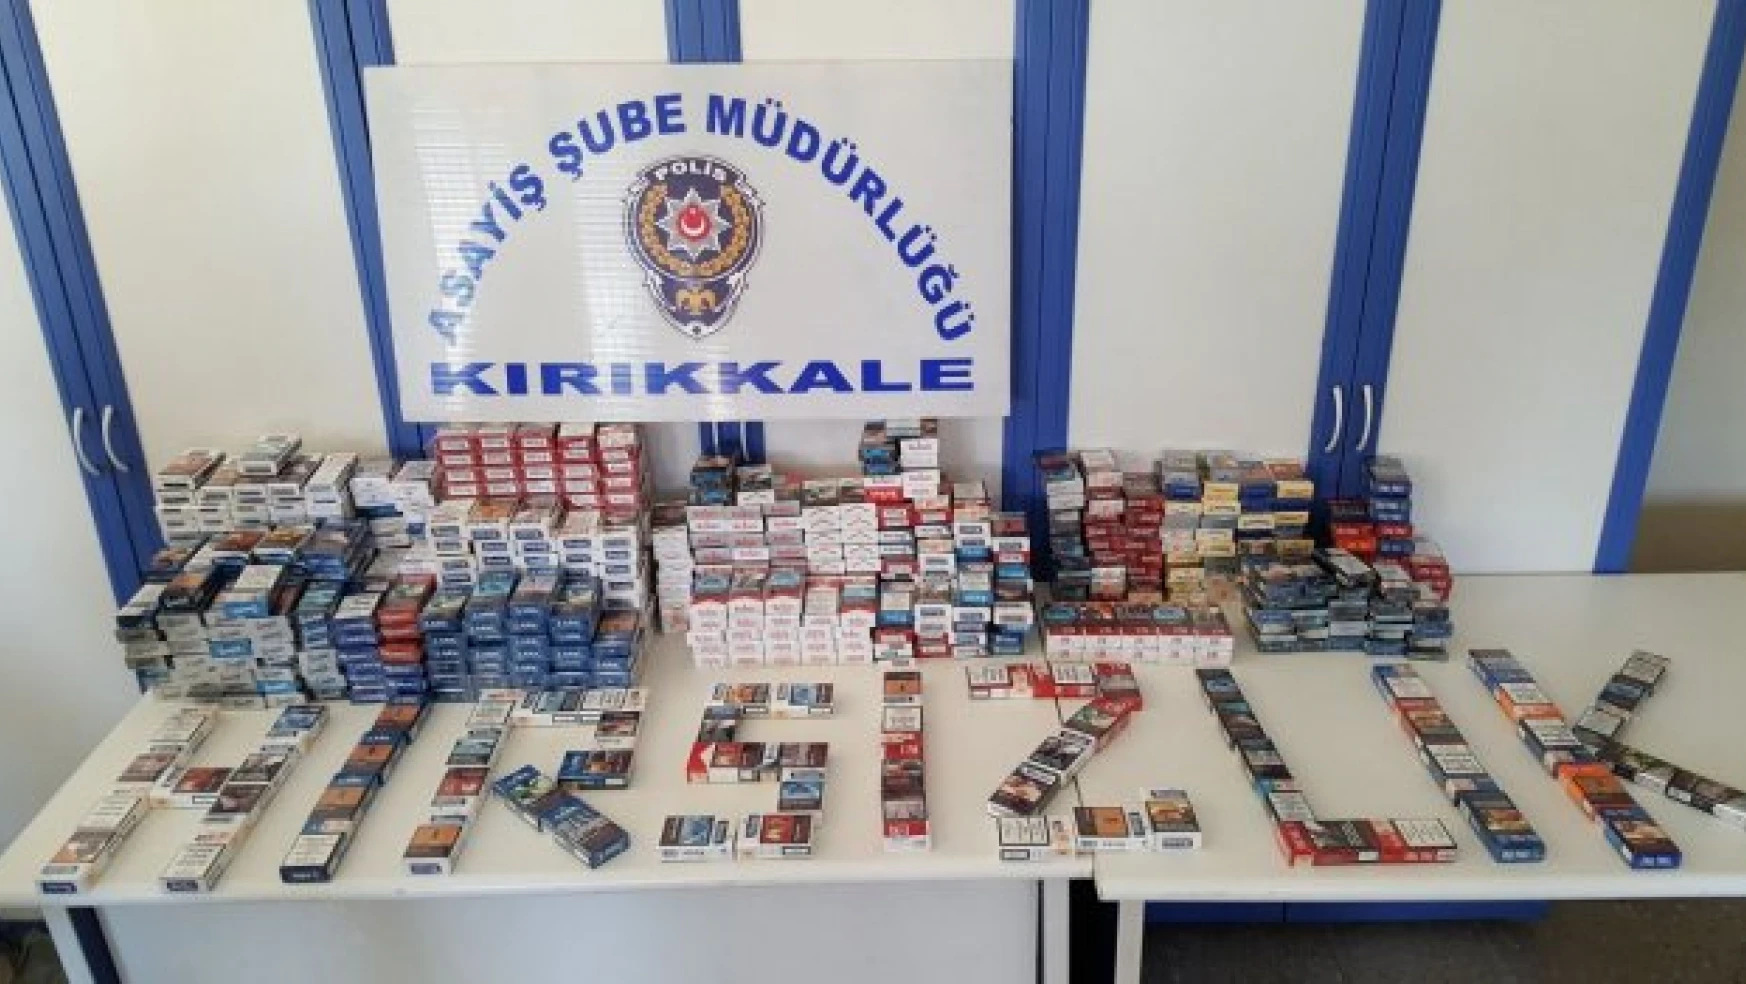 Kırıkkale'de büfeden sigara çalan hırsız yakalandı